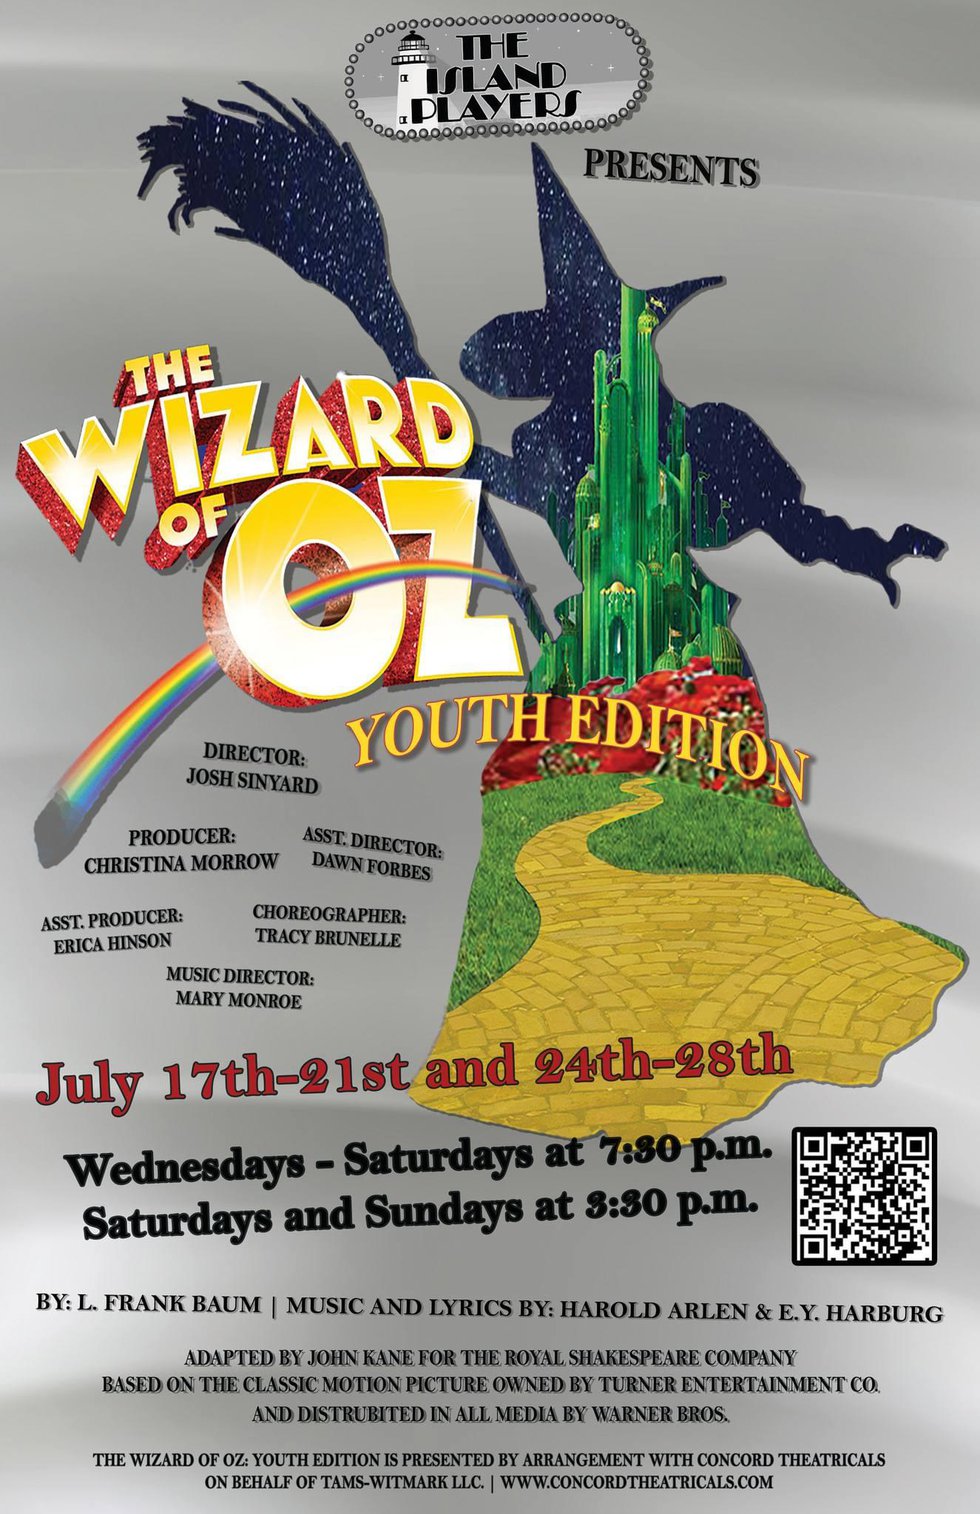 YPSWZ Wizard of Oz poster